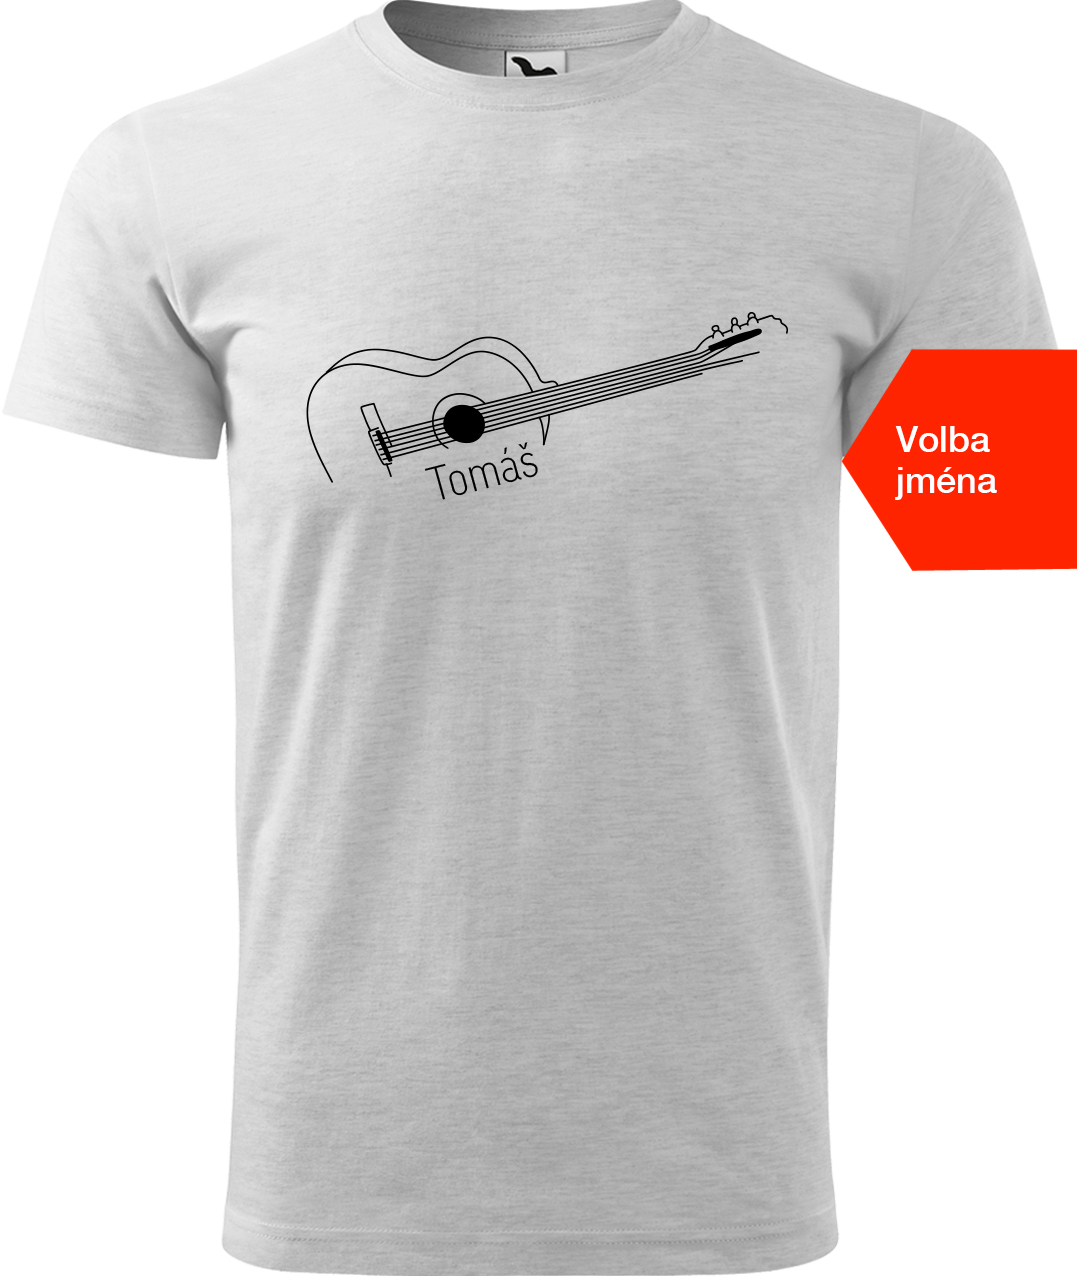 Pánské tričko s kytarou se jménem - Stylizovaná kytara Velikost: 4XL, Barva: Světle šedý melír (03), Střih: pánský